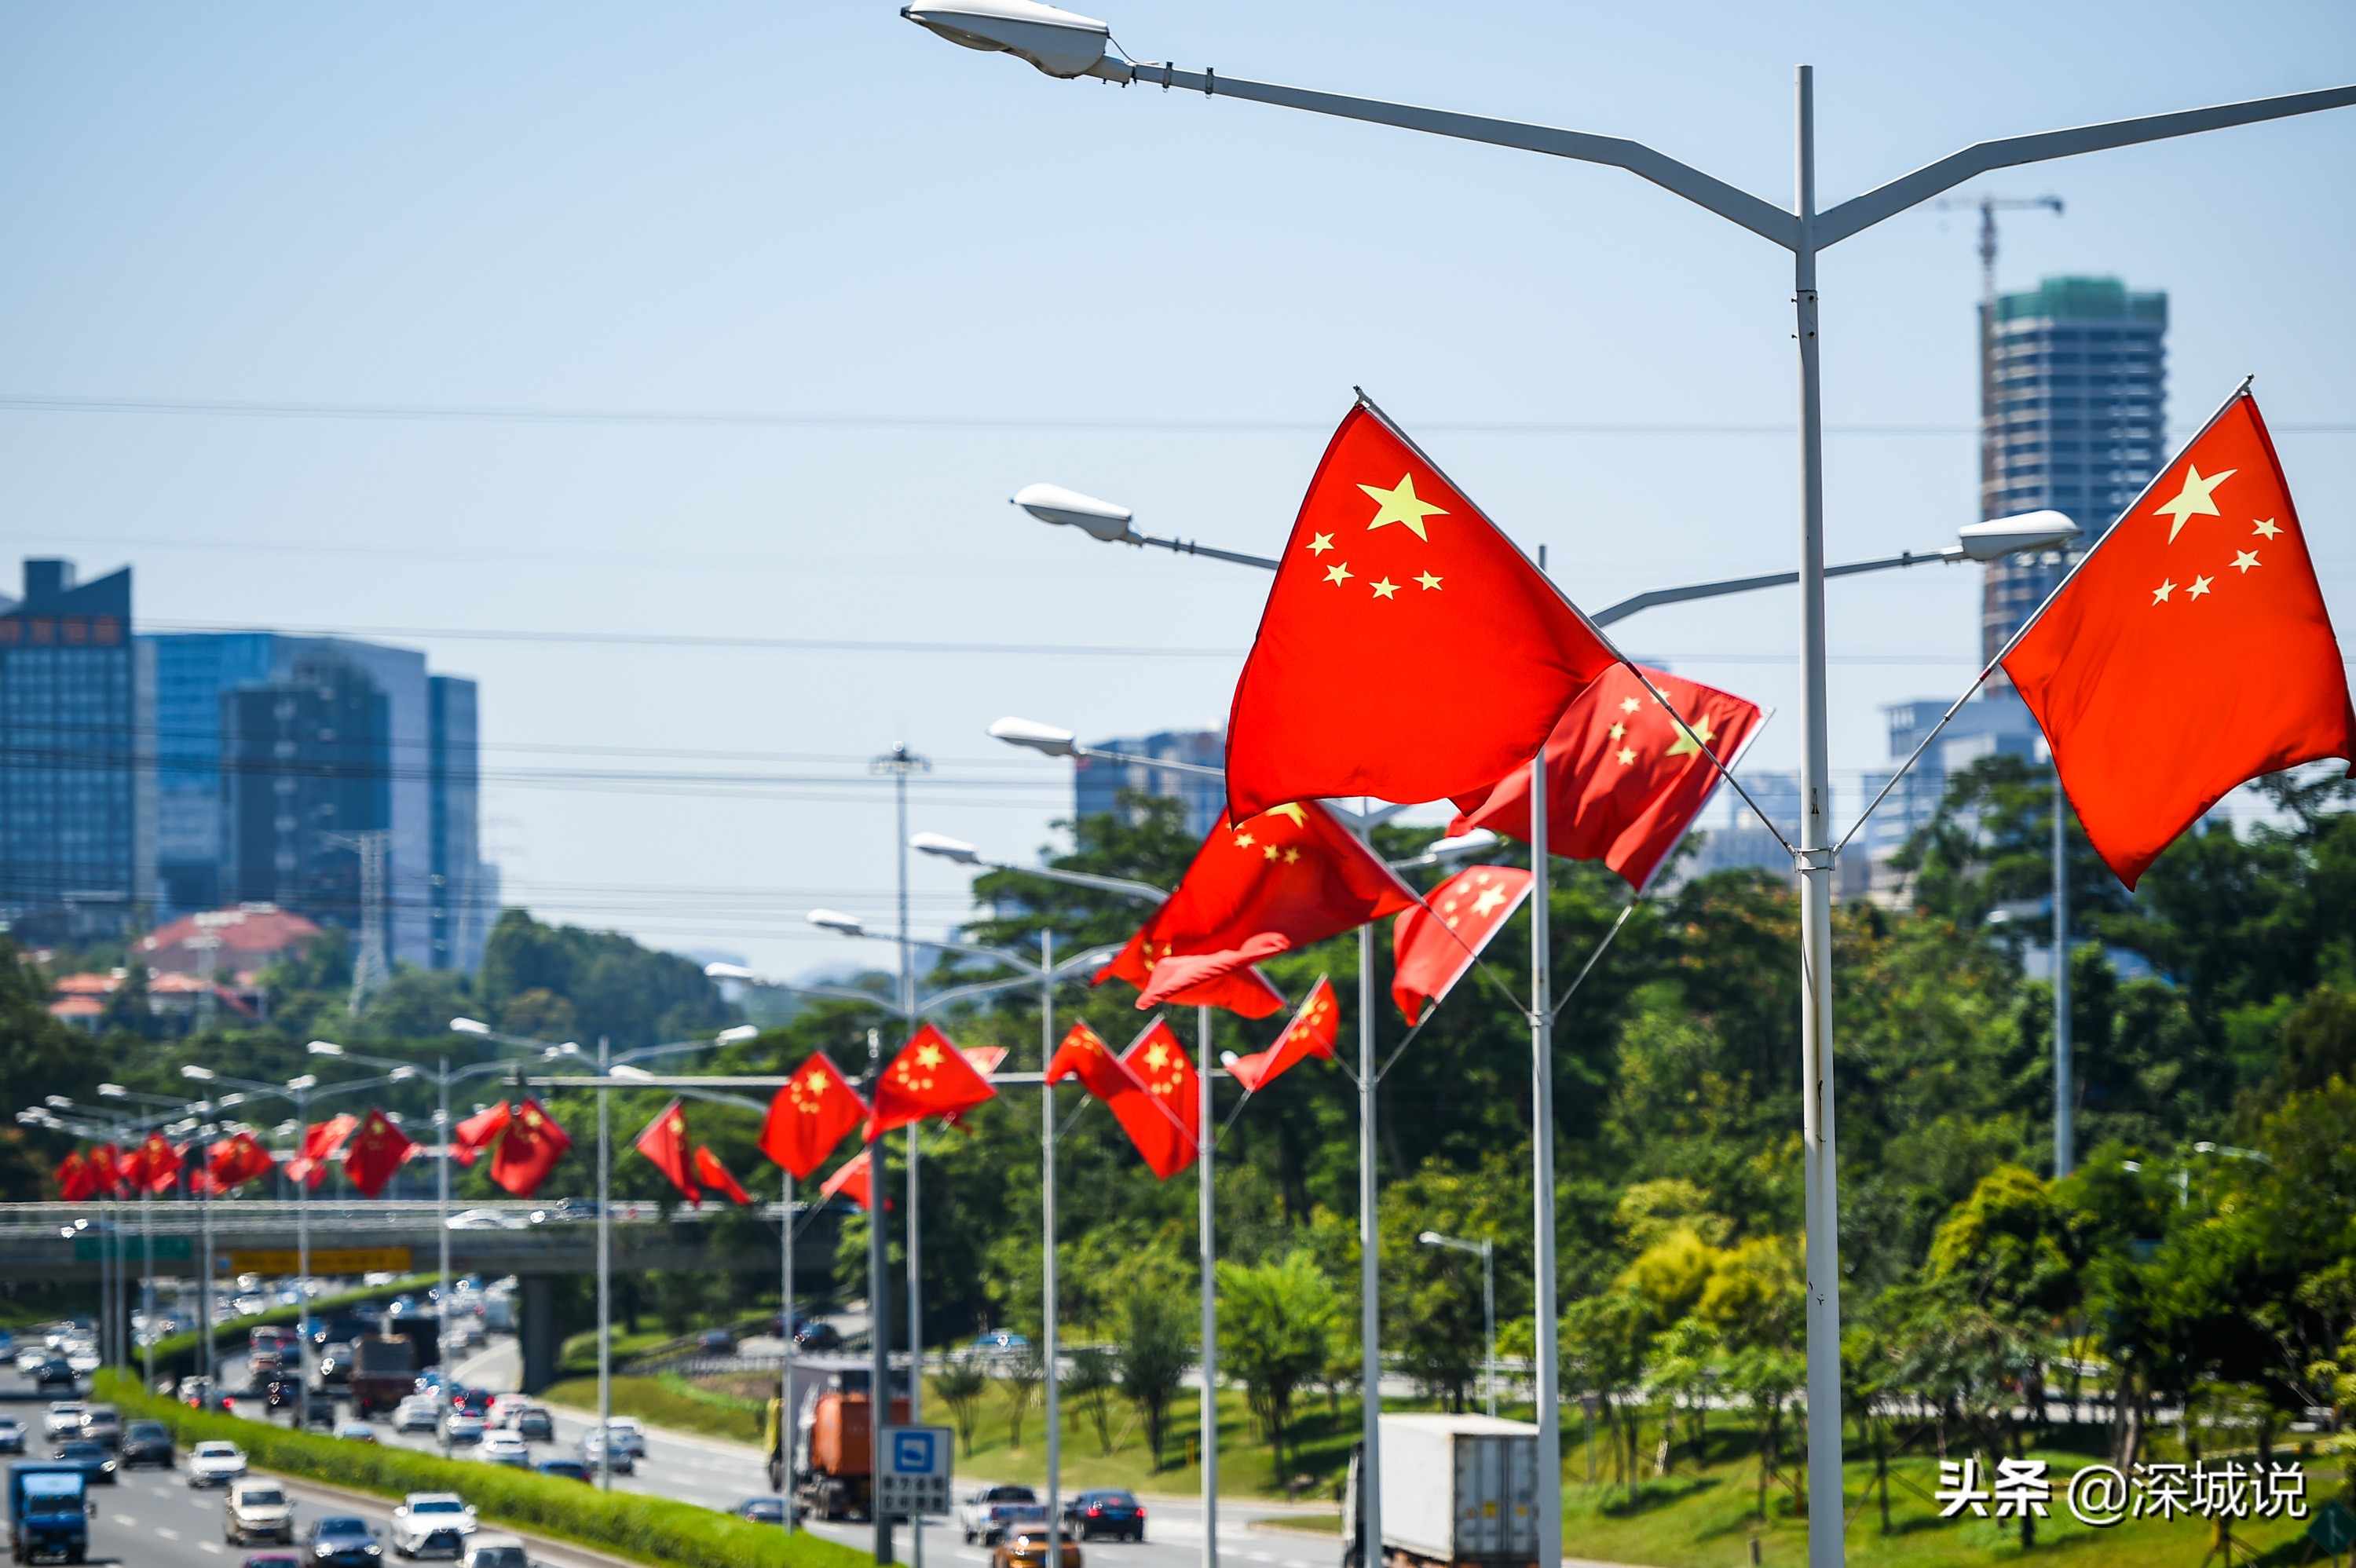 1/12国庆即将到来,近日,不少市民发现,深圳部分主干道又挂上了国旗.